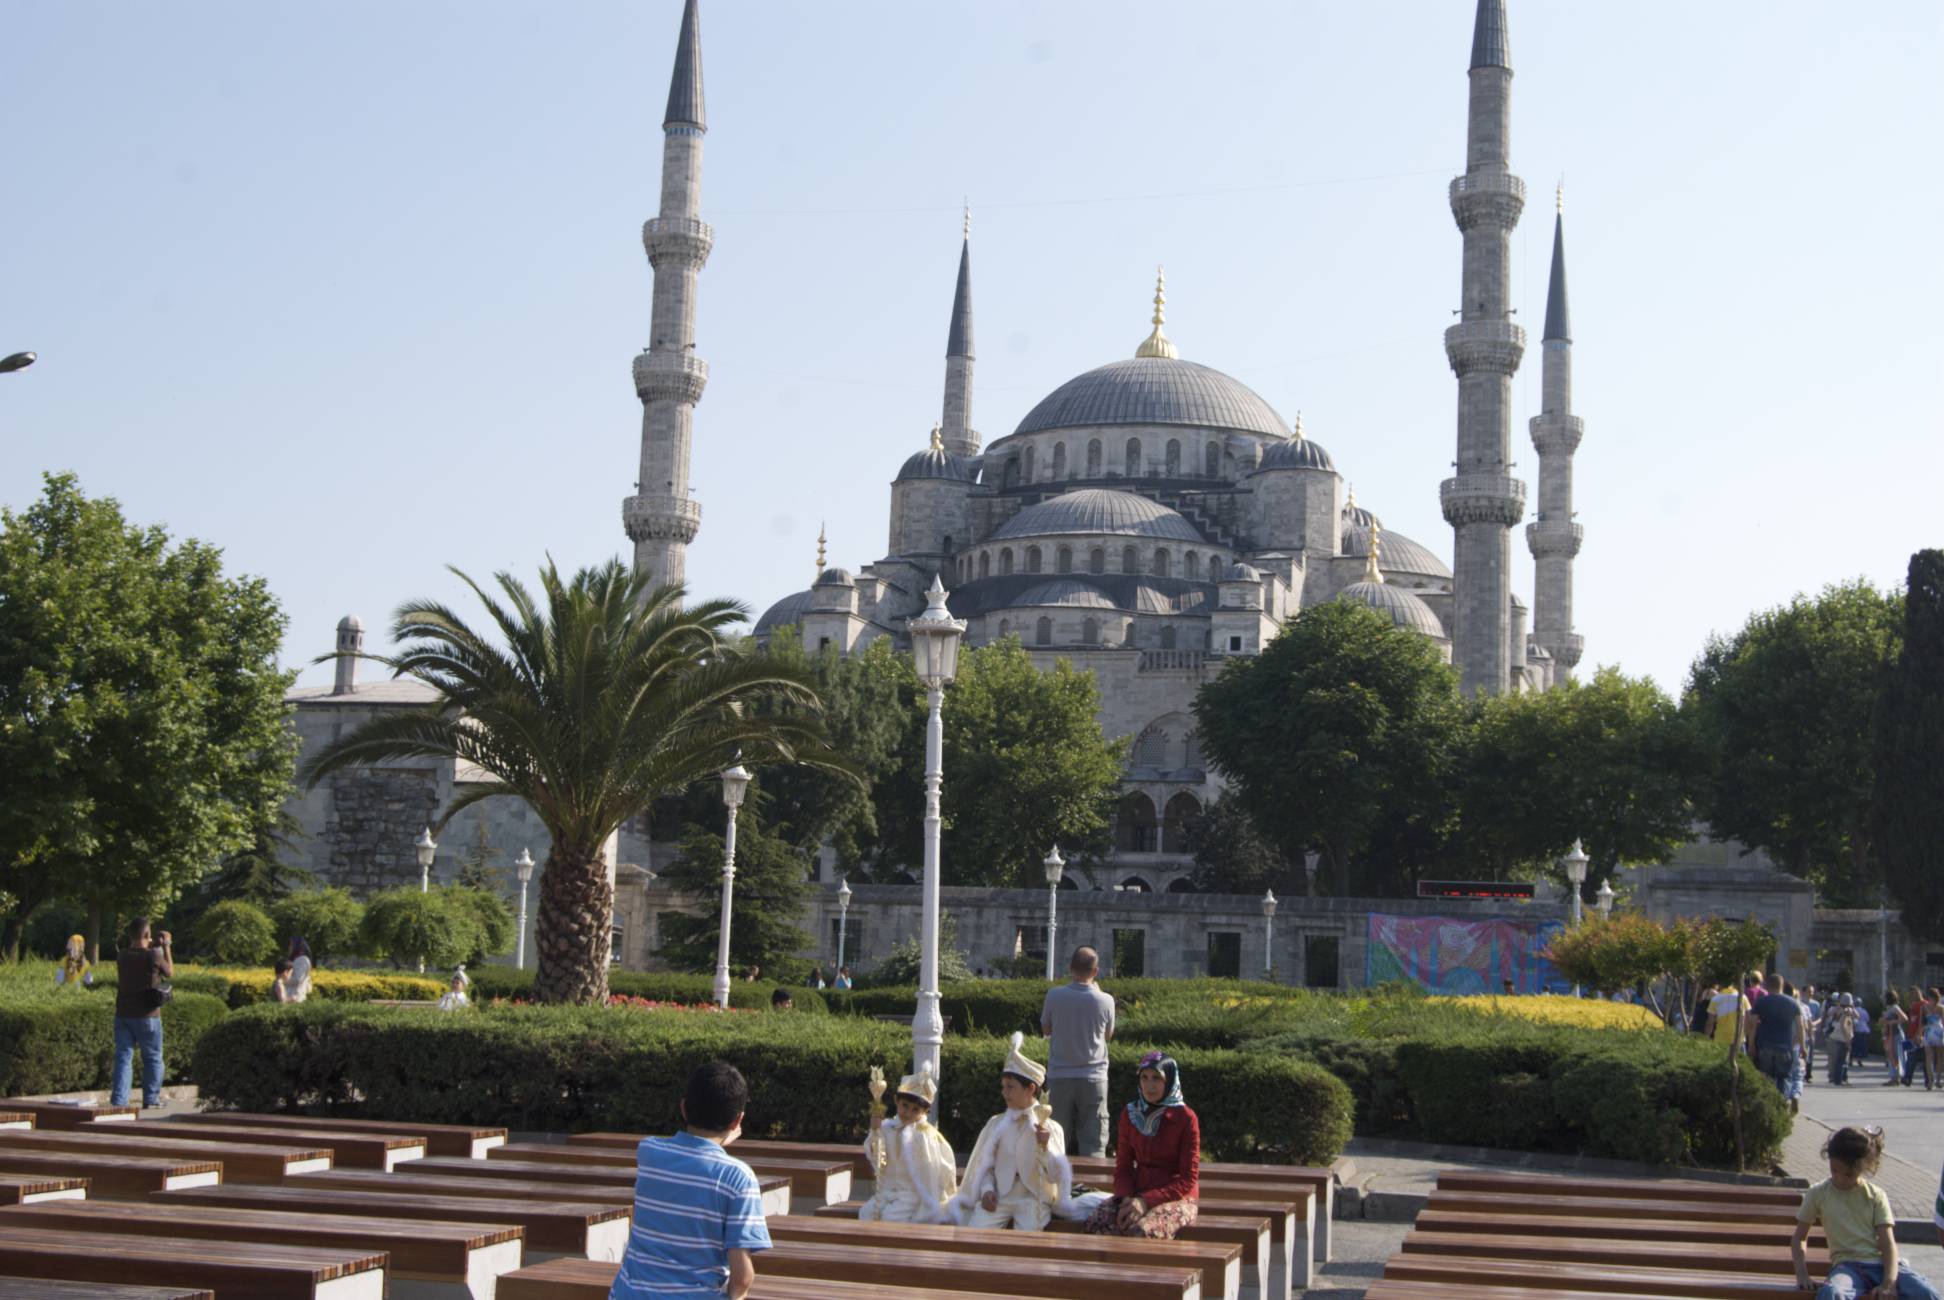  هنصلى فين النهاردة ( مسجد الفاتح ) - أسطنبول  Outside-blue-mosque1